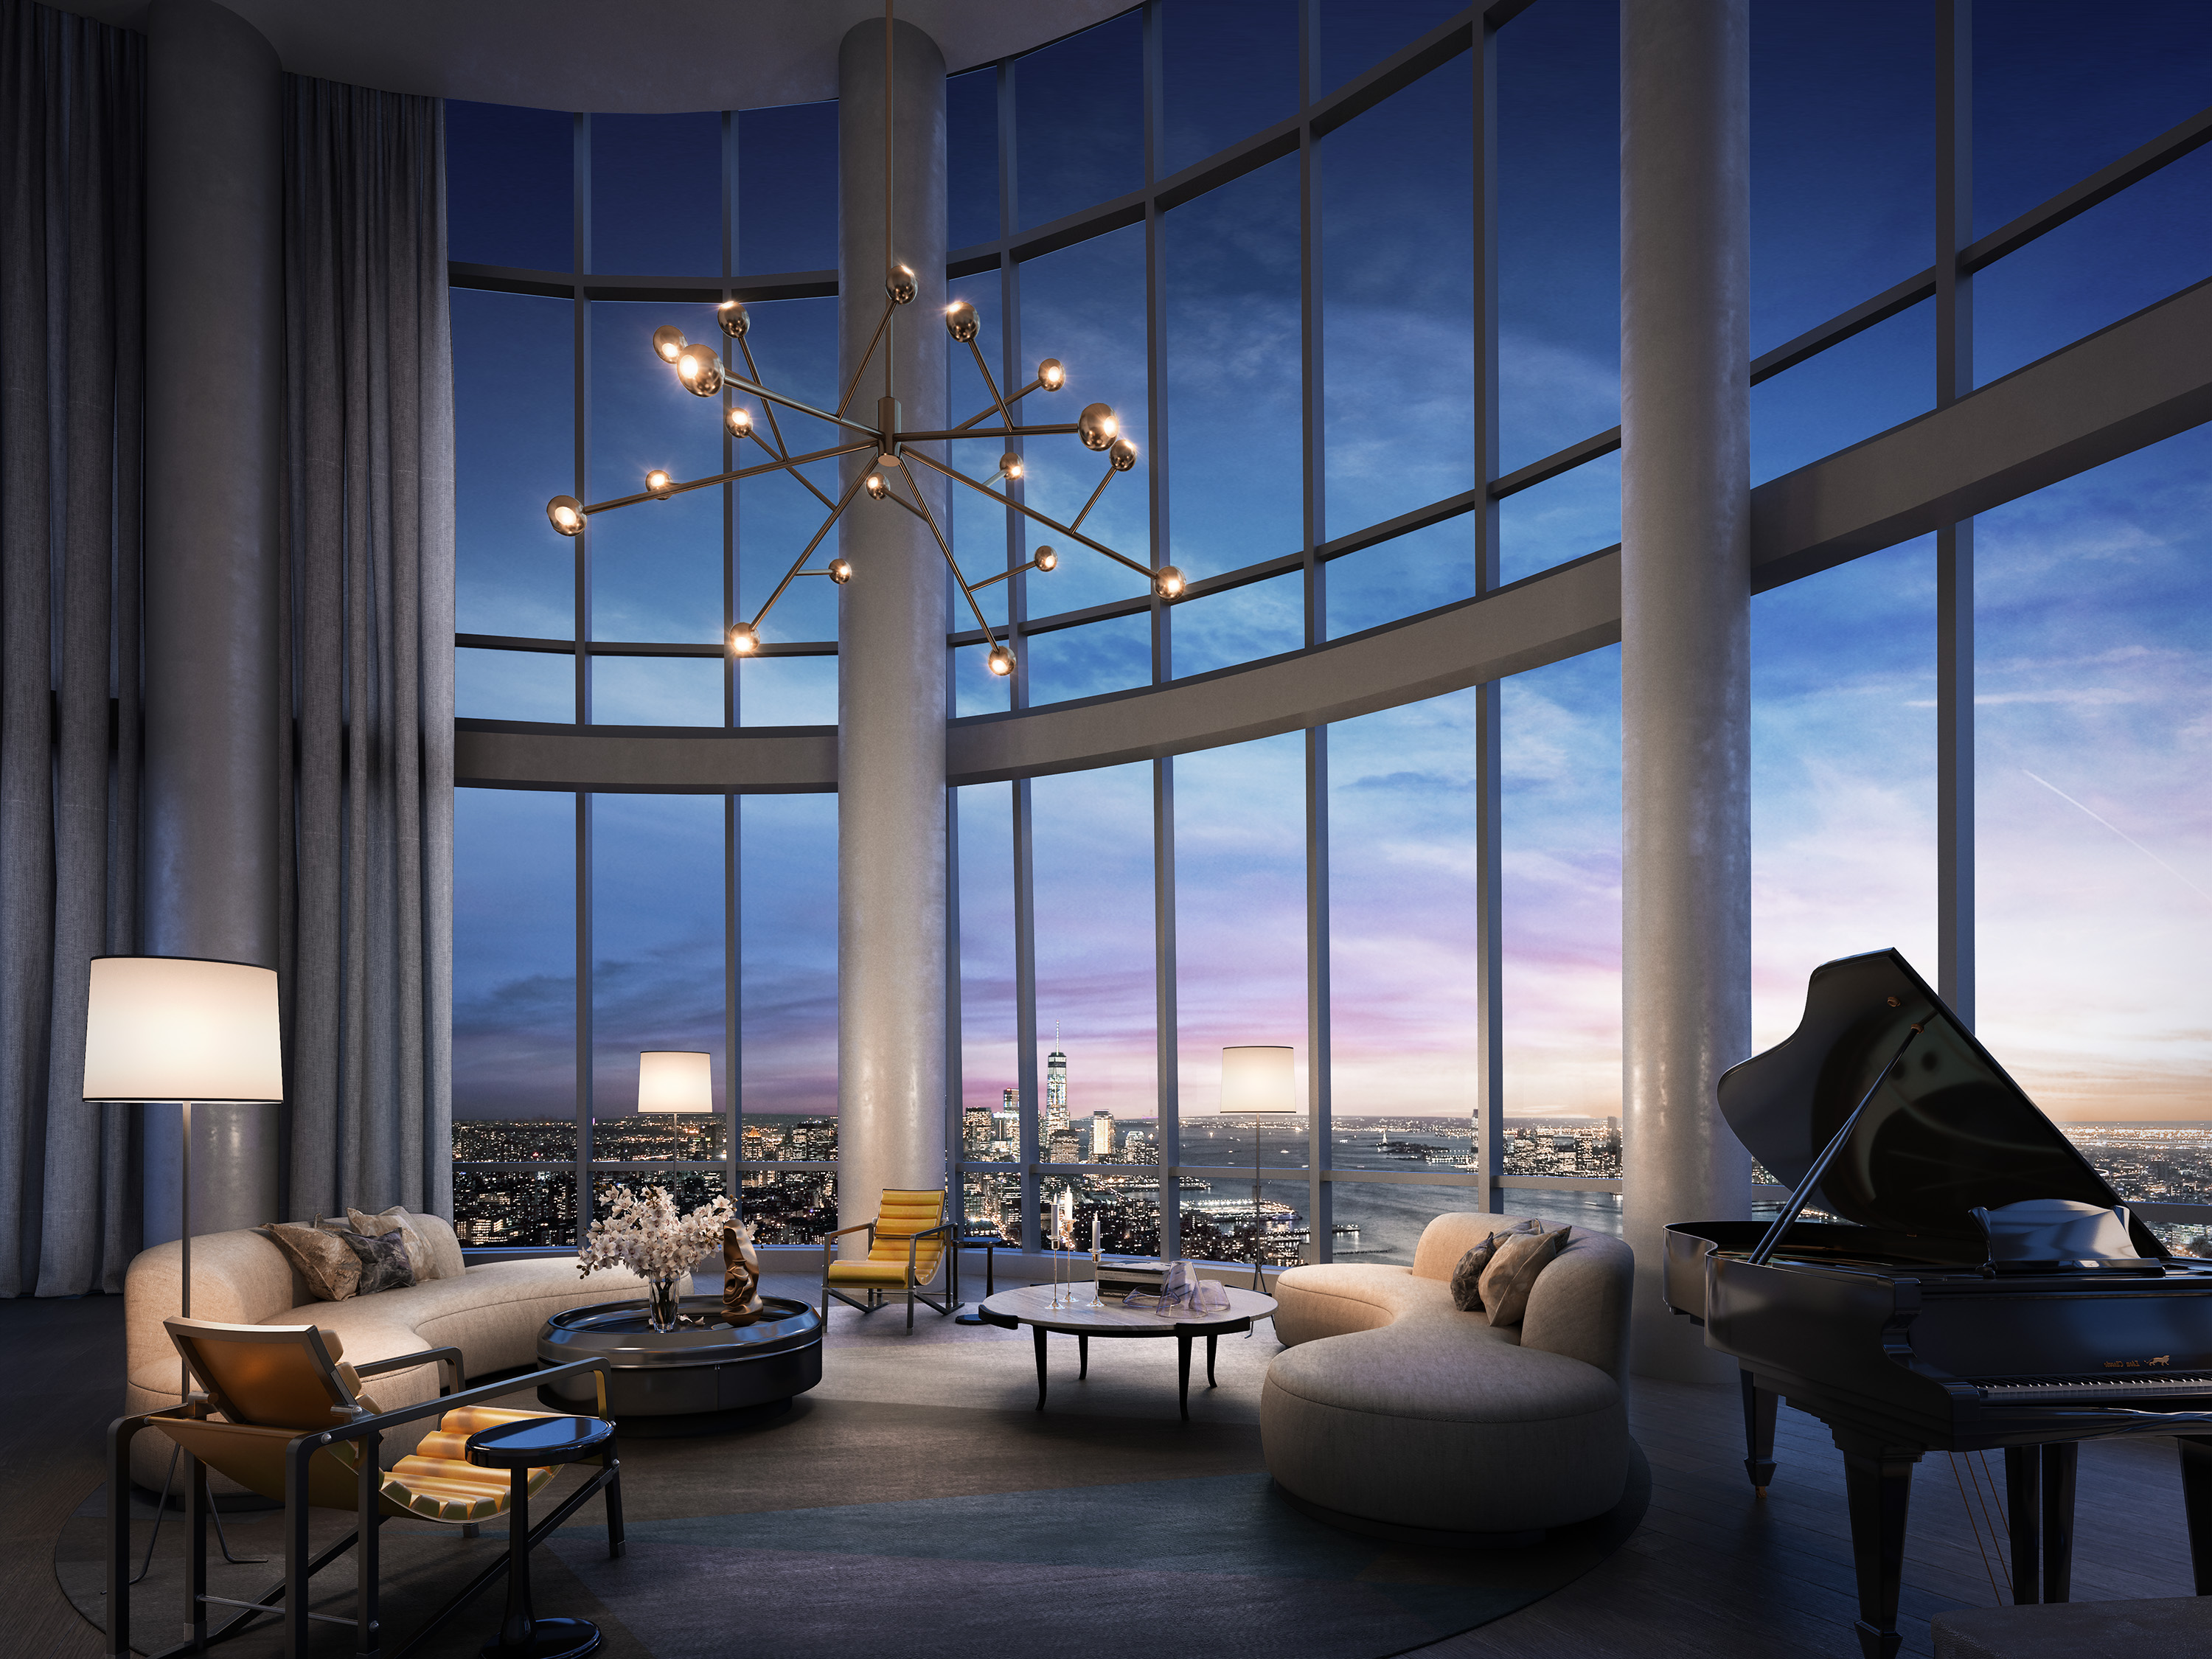 Căn penthouse tòa nhà 35 Hudson Yards đang được rao giá 59 triệu USD, sở hữu tầm nhìn toàn cảnh sông Hudson, Công viên Trung tâm (Central Park) và khu tài chính Manhattan. Ảnh: Curbed.